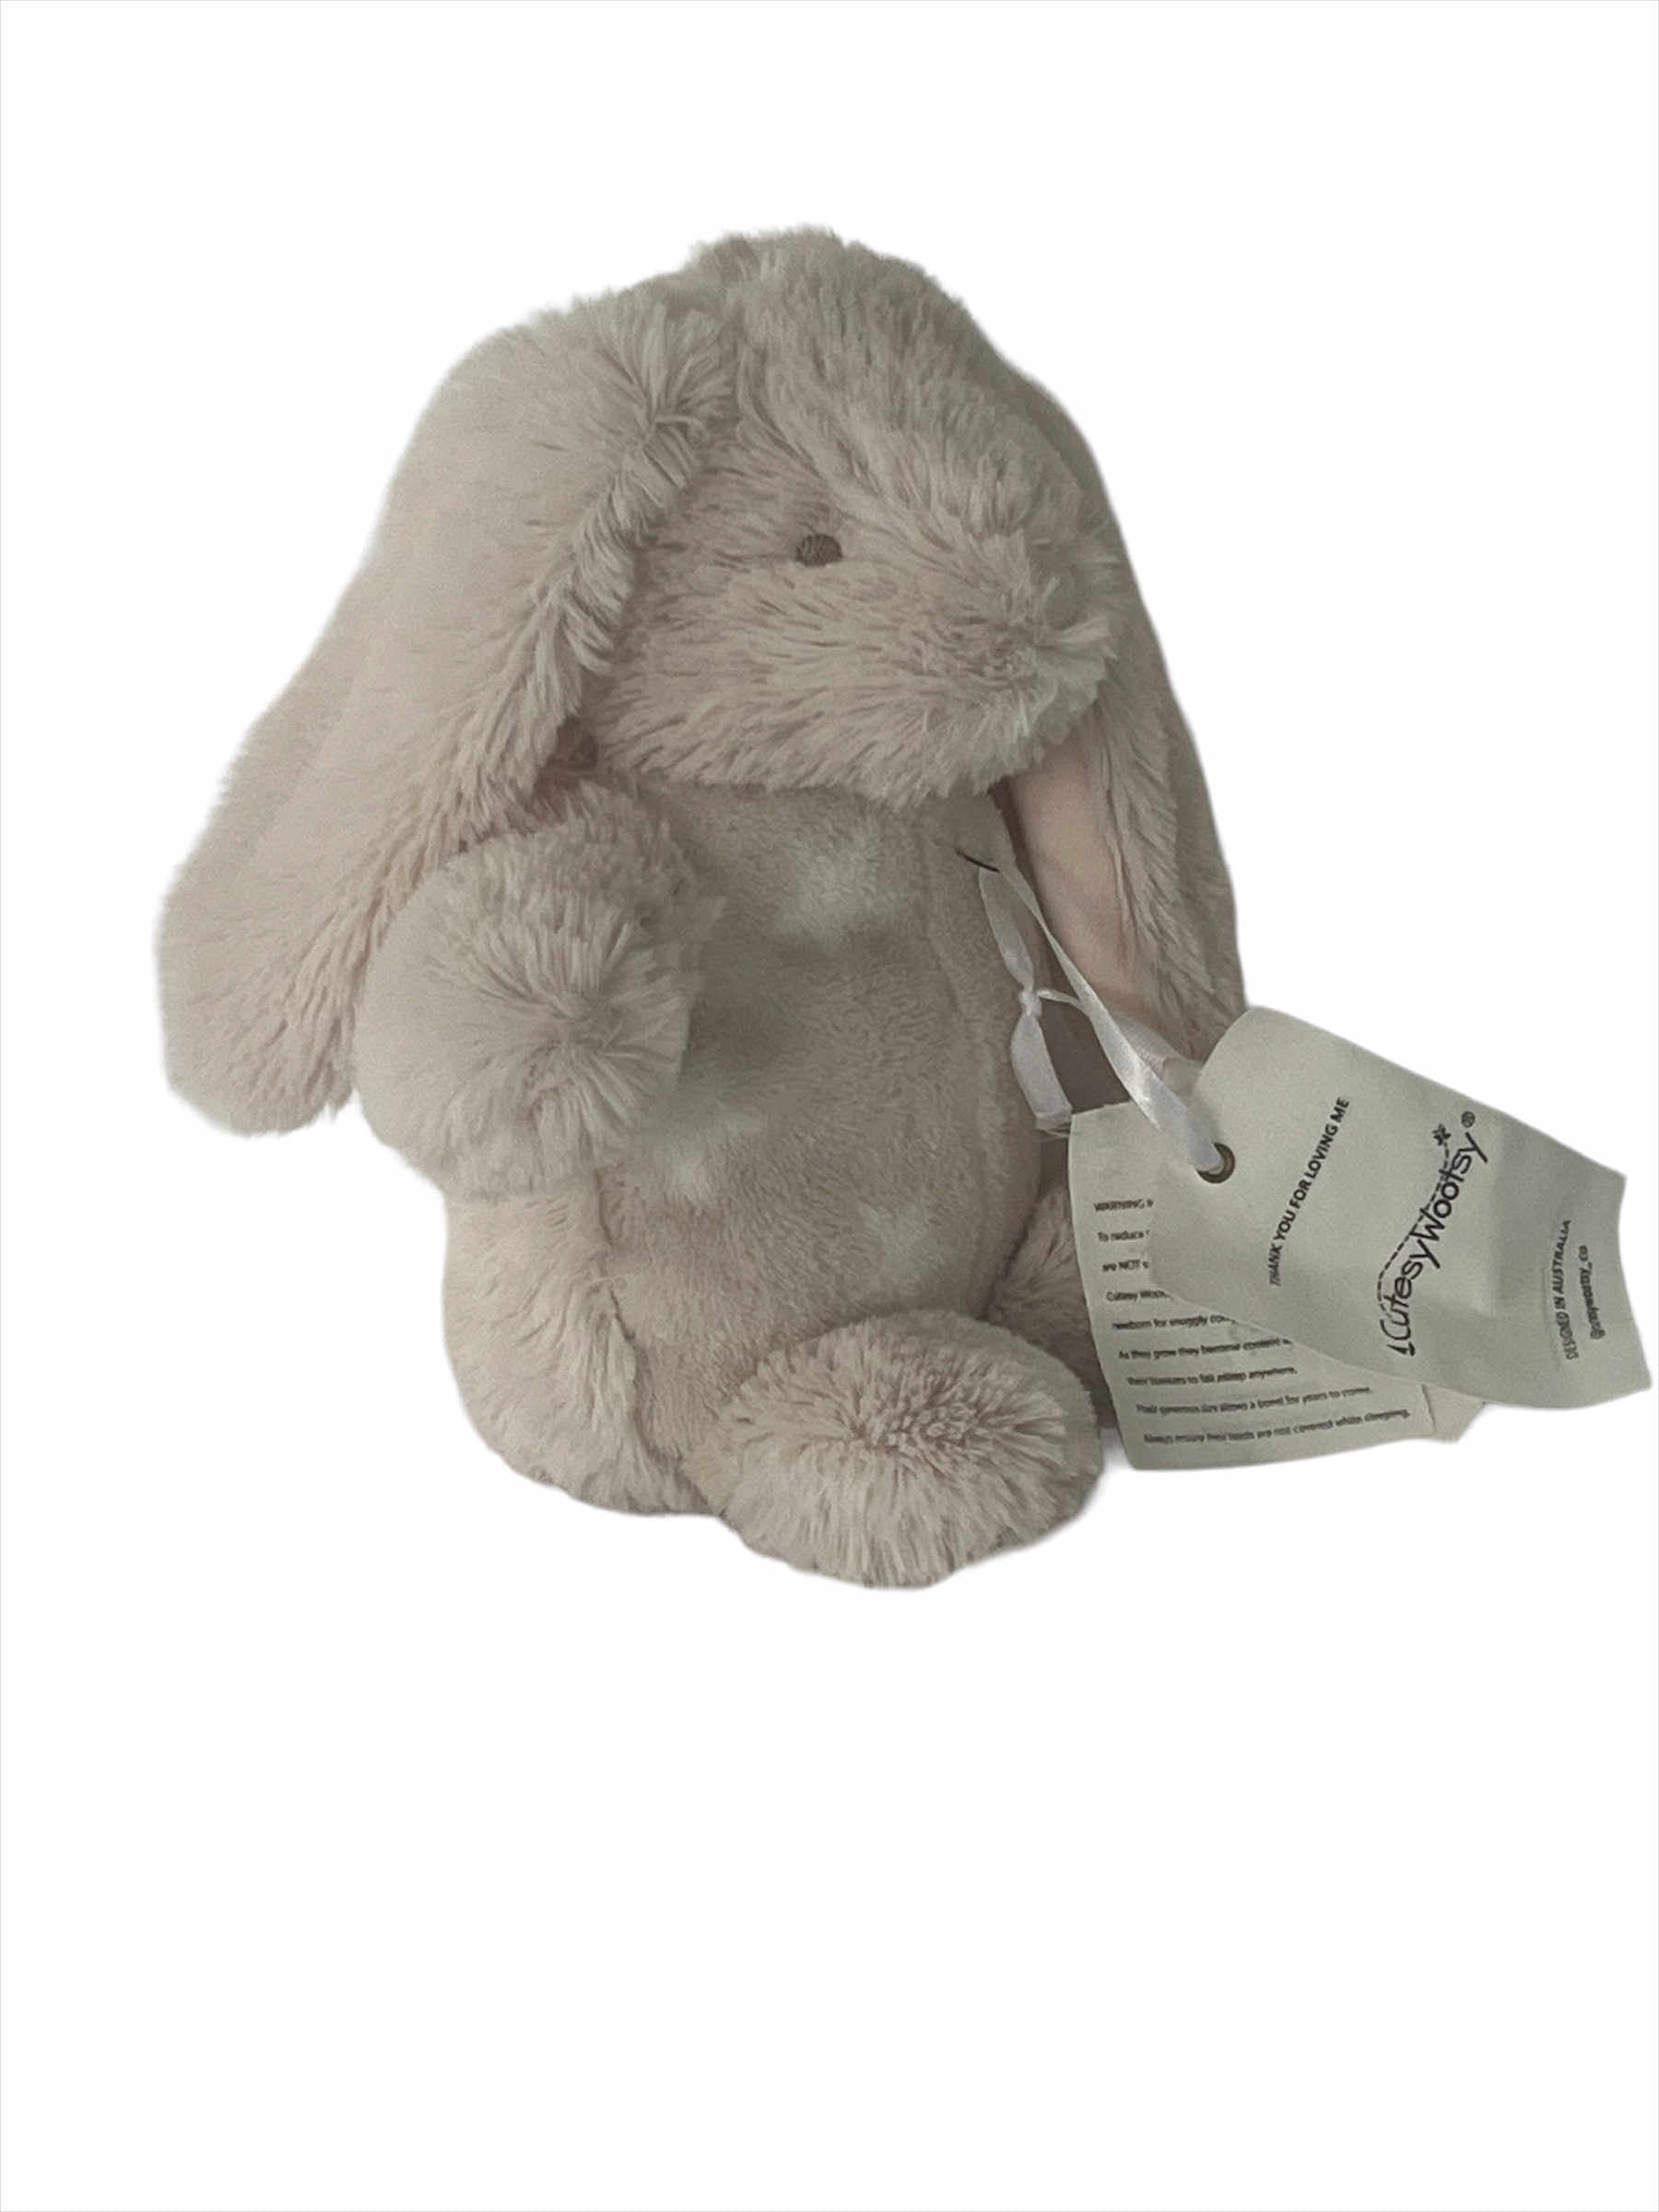 Sebastian the Bunny Plush Pal - Cutesy Wootsy